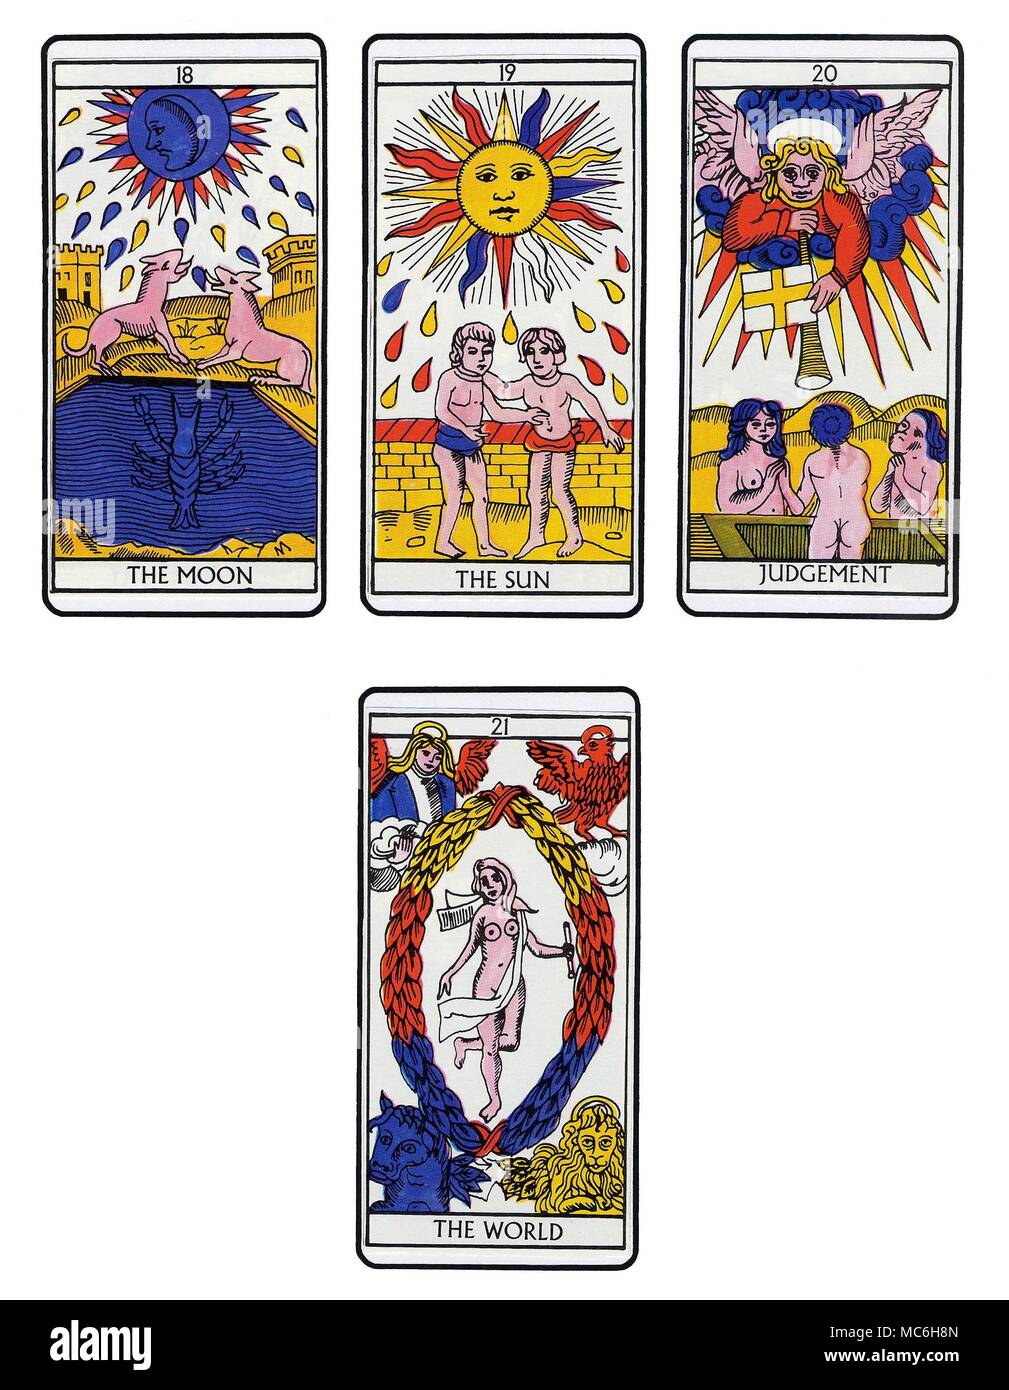 TAROT DE MARSELLA - Moderno DECK cuatro cartas de una secuencia completa de  Tarot de Marsella en la tradición. Arriba, de izquierda a derecha: La Luna, el  sol, el juicio y el